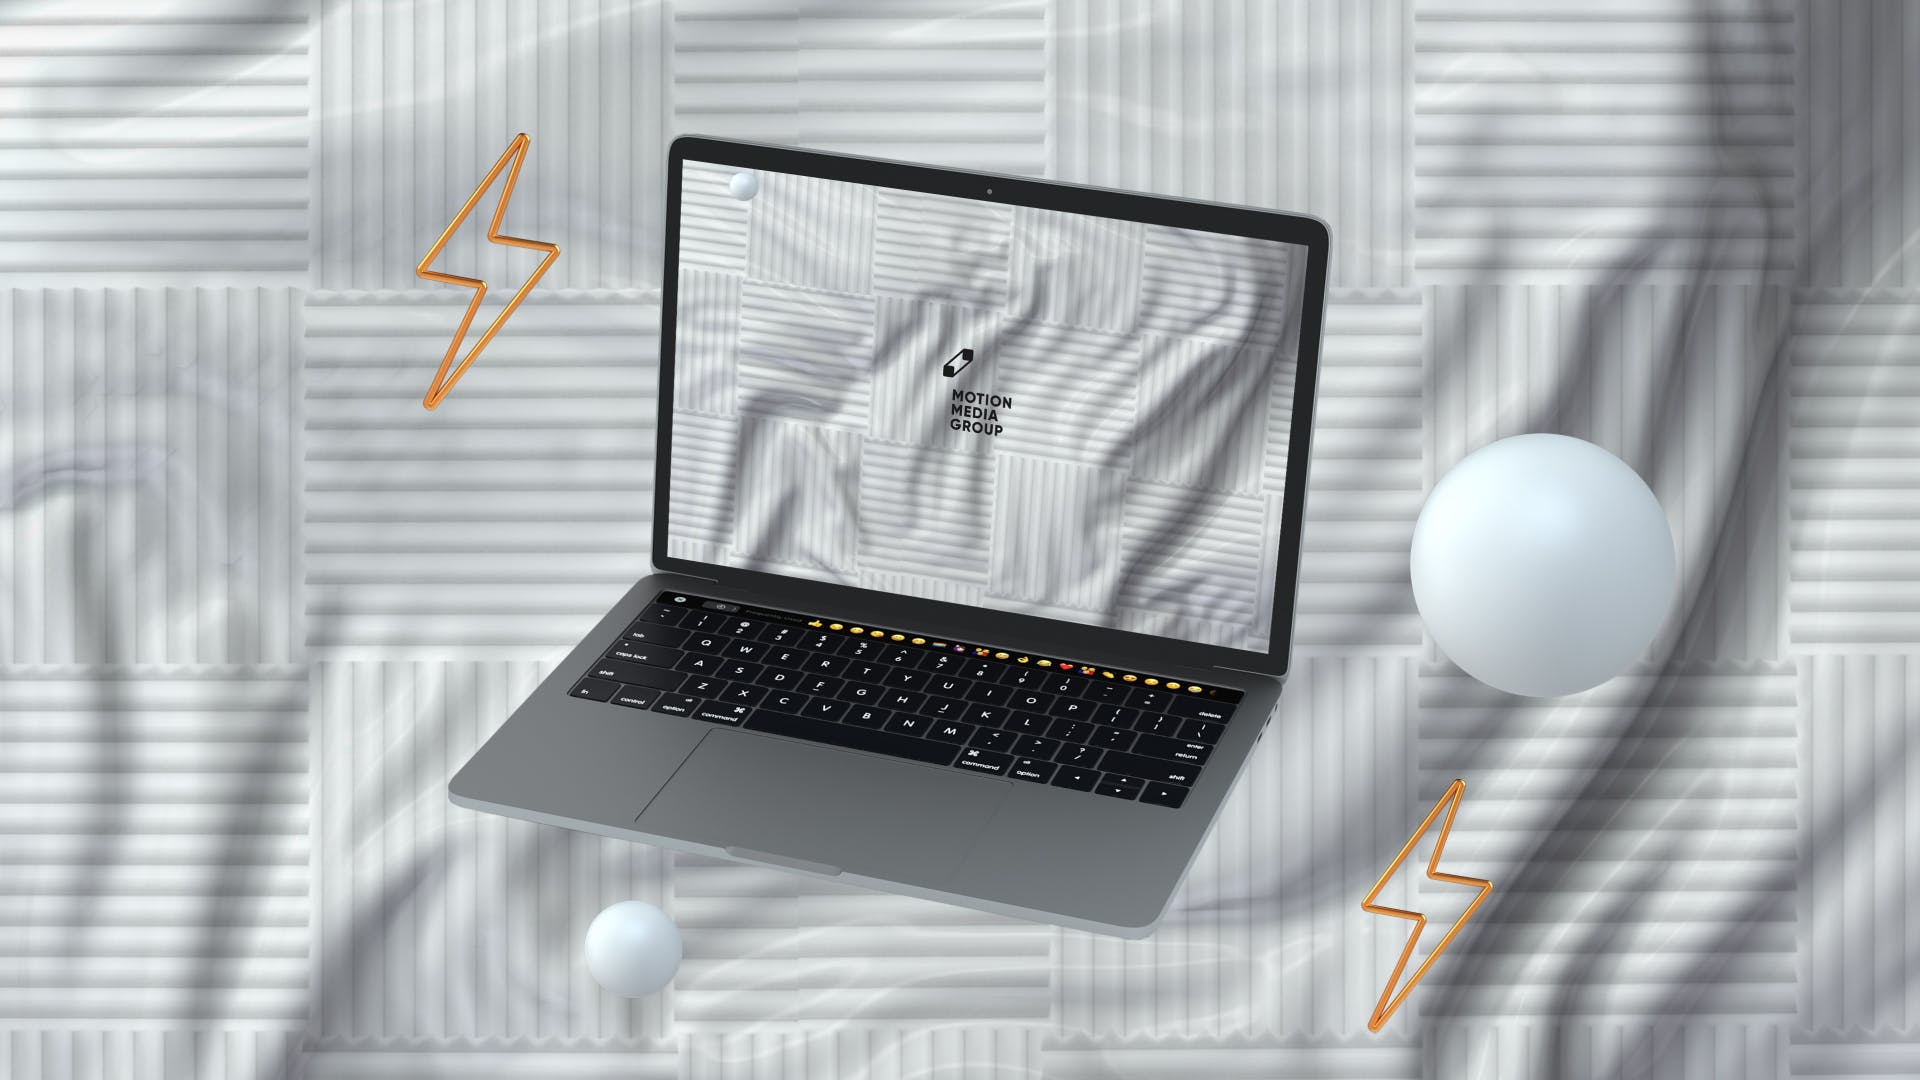 优雅时尚风格3D立体风格笔记本电脑屏幕预览第一素材精选样机 10 Light Laptop Mockups插图(5)